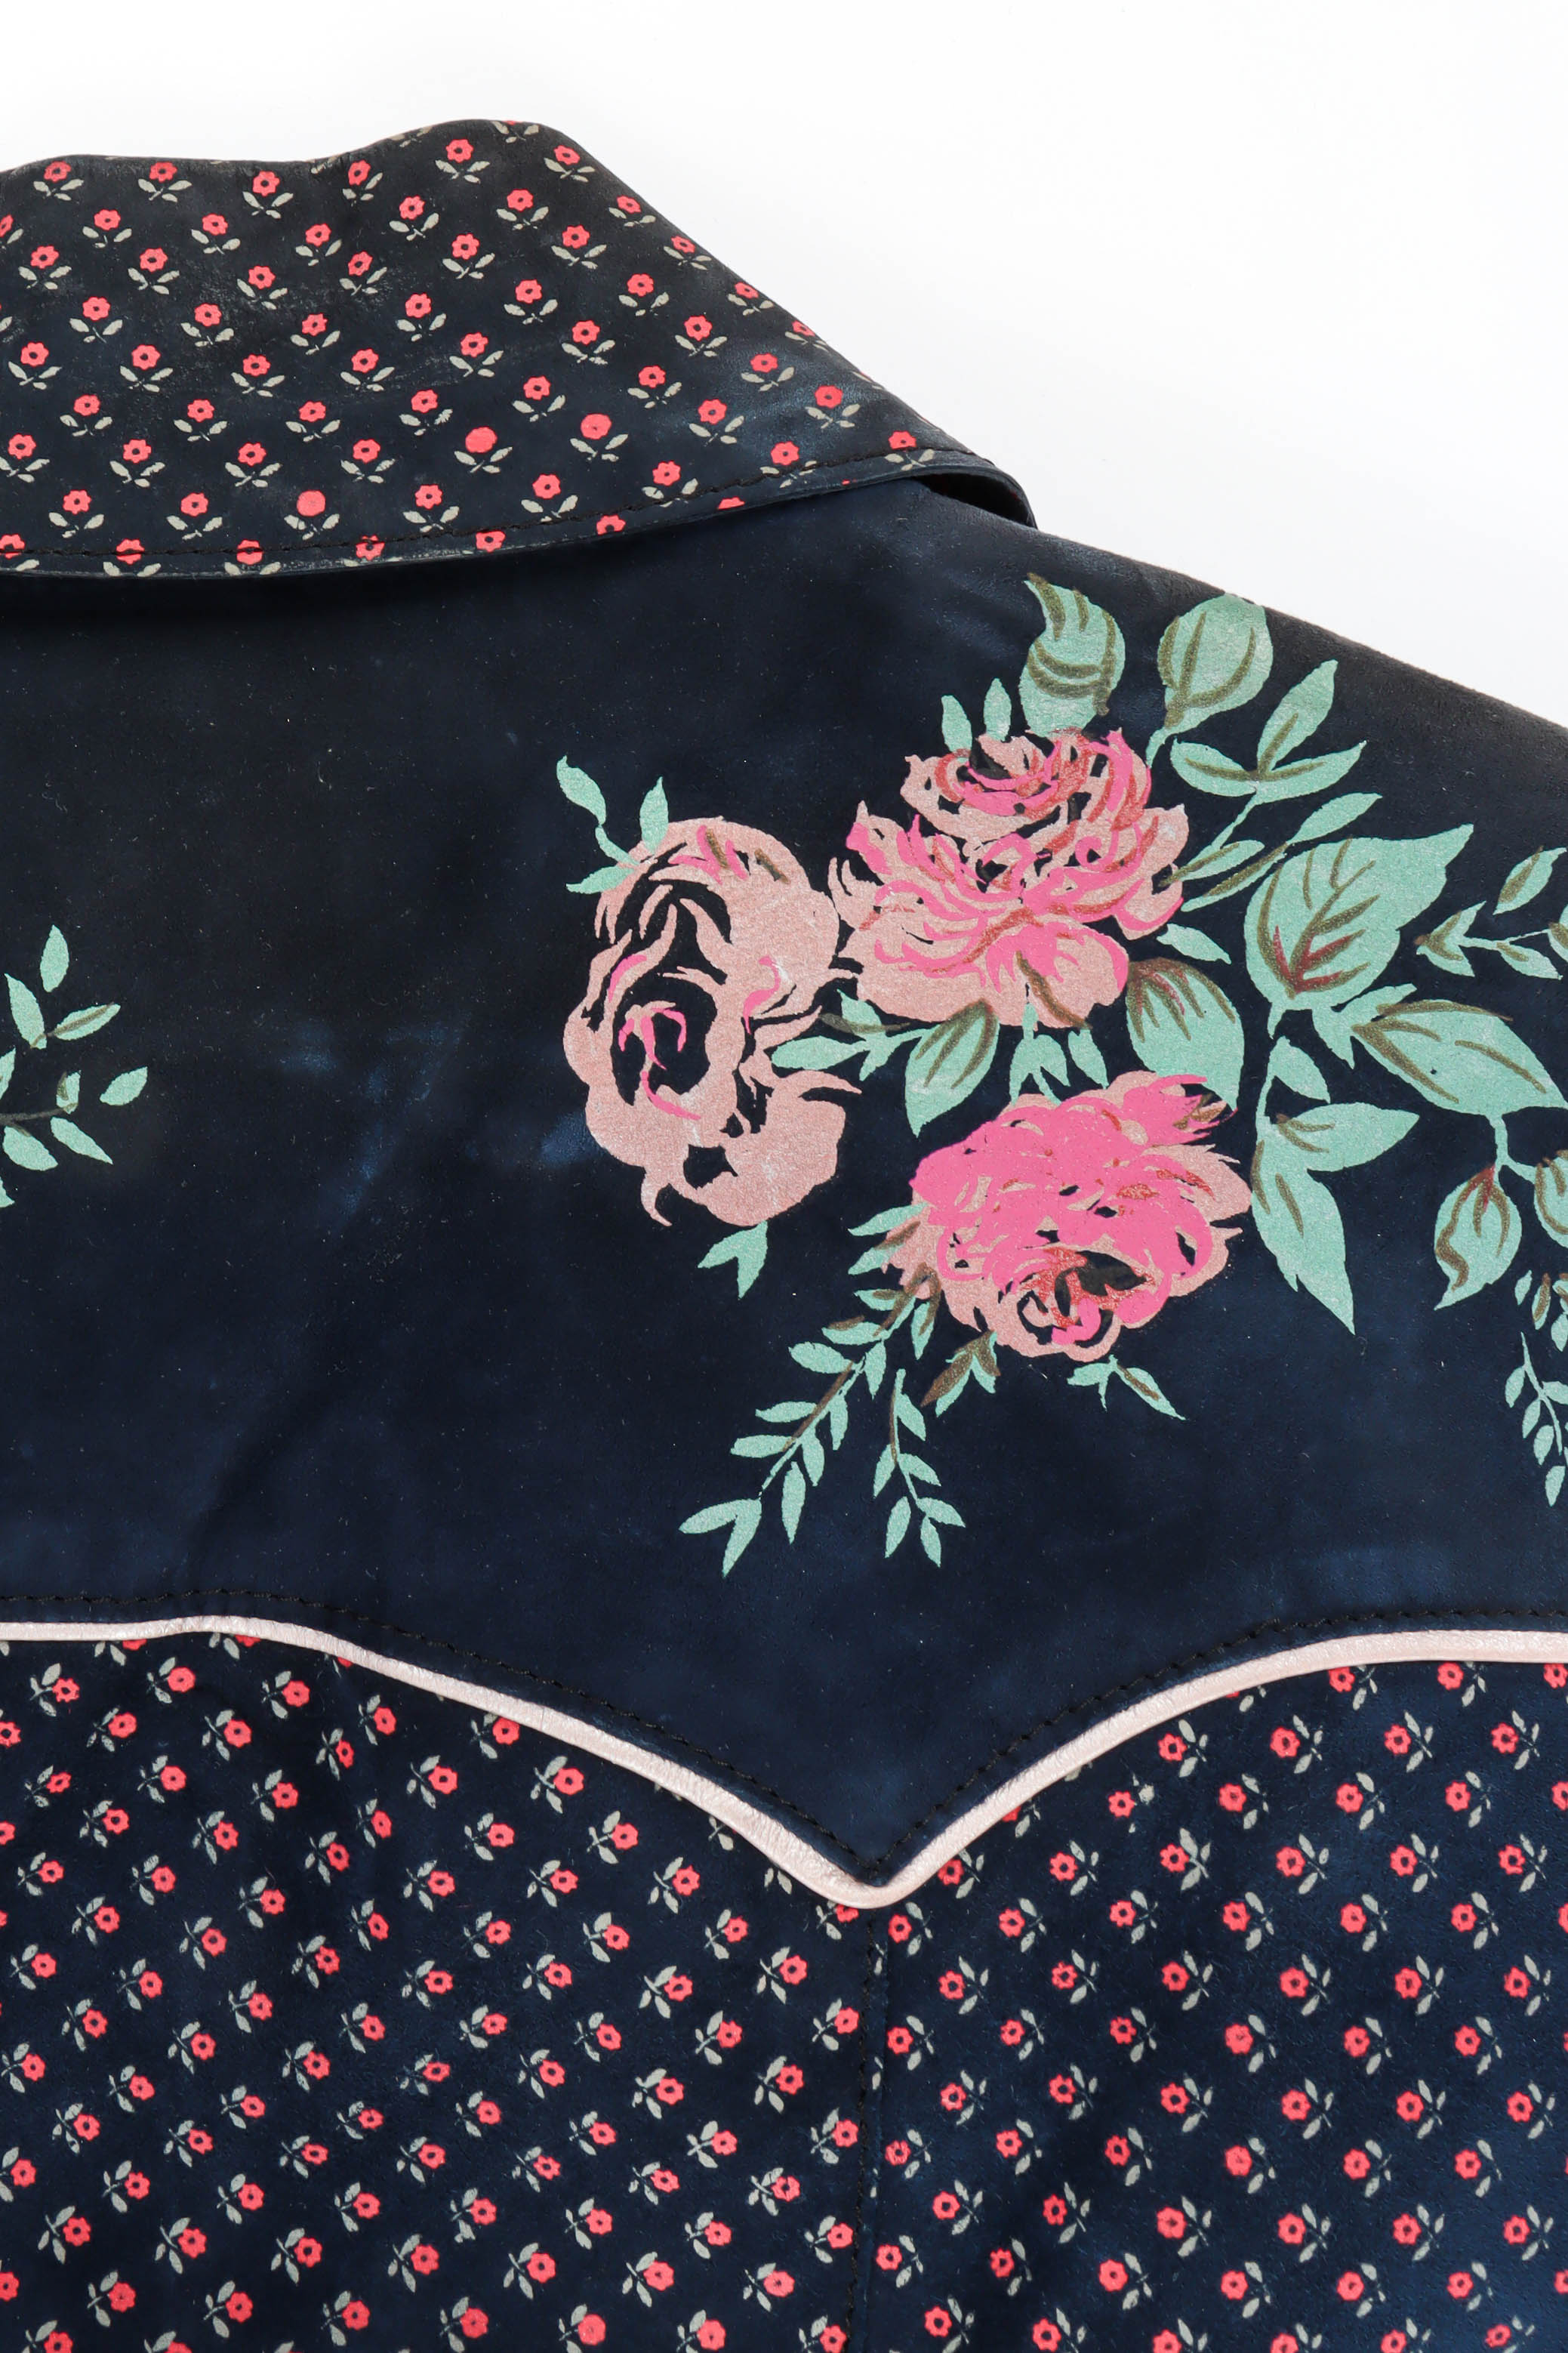 Vintage Alan Austin Rose Floral Leather Blouse back shoulder detail @ Recess LA